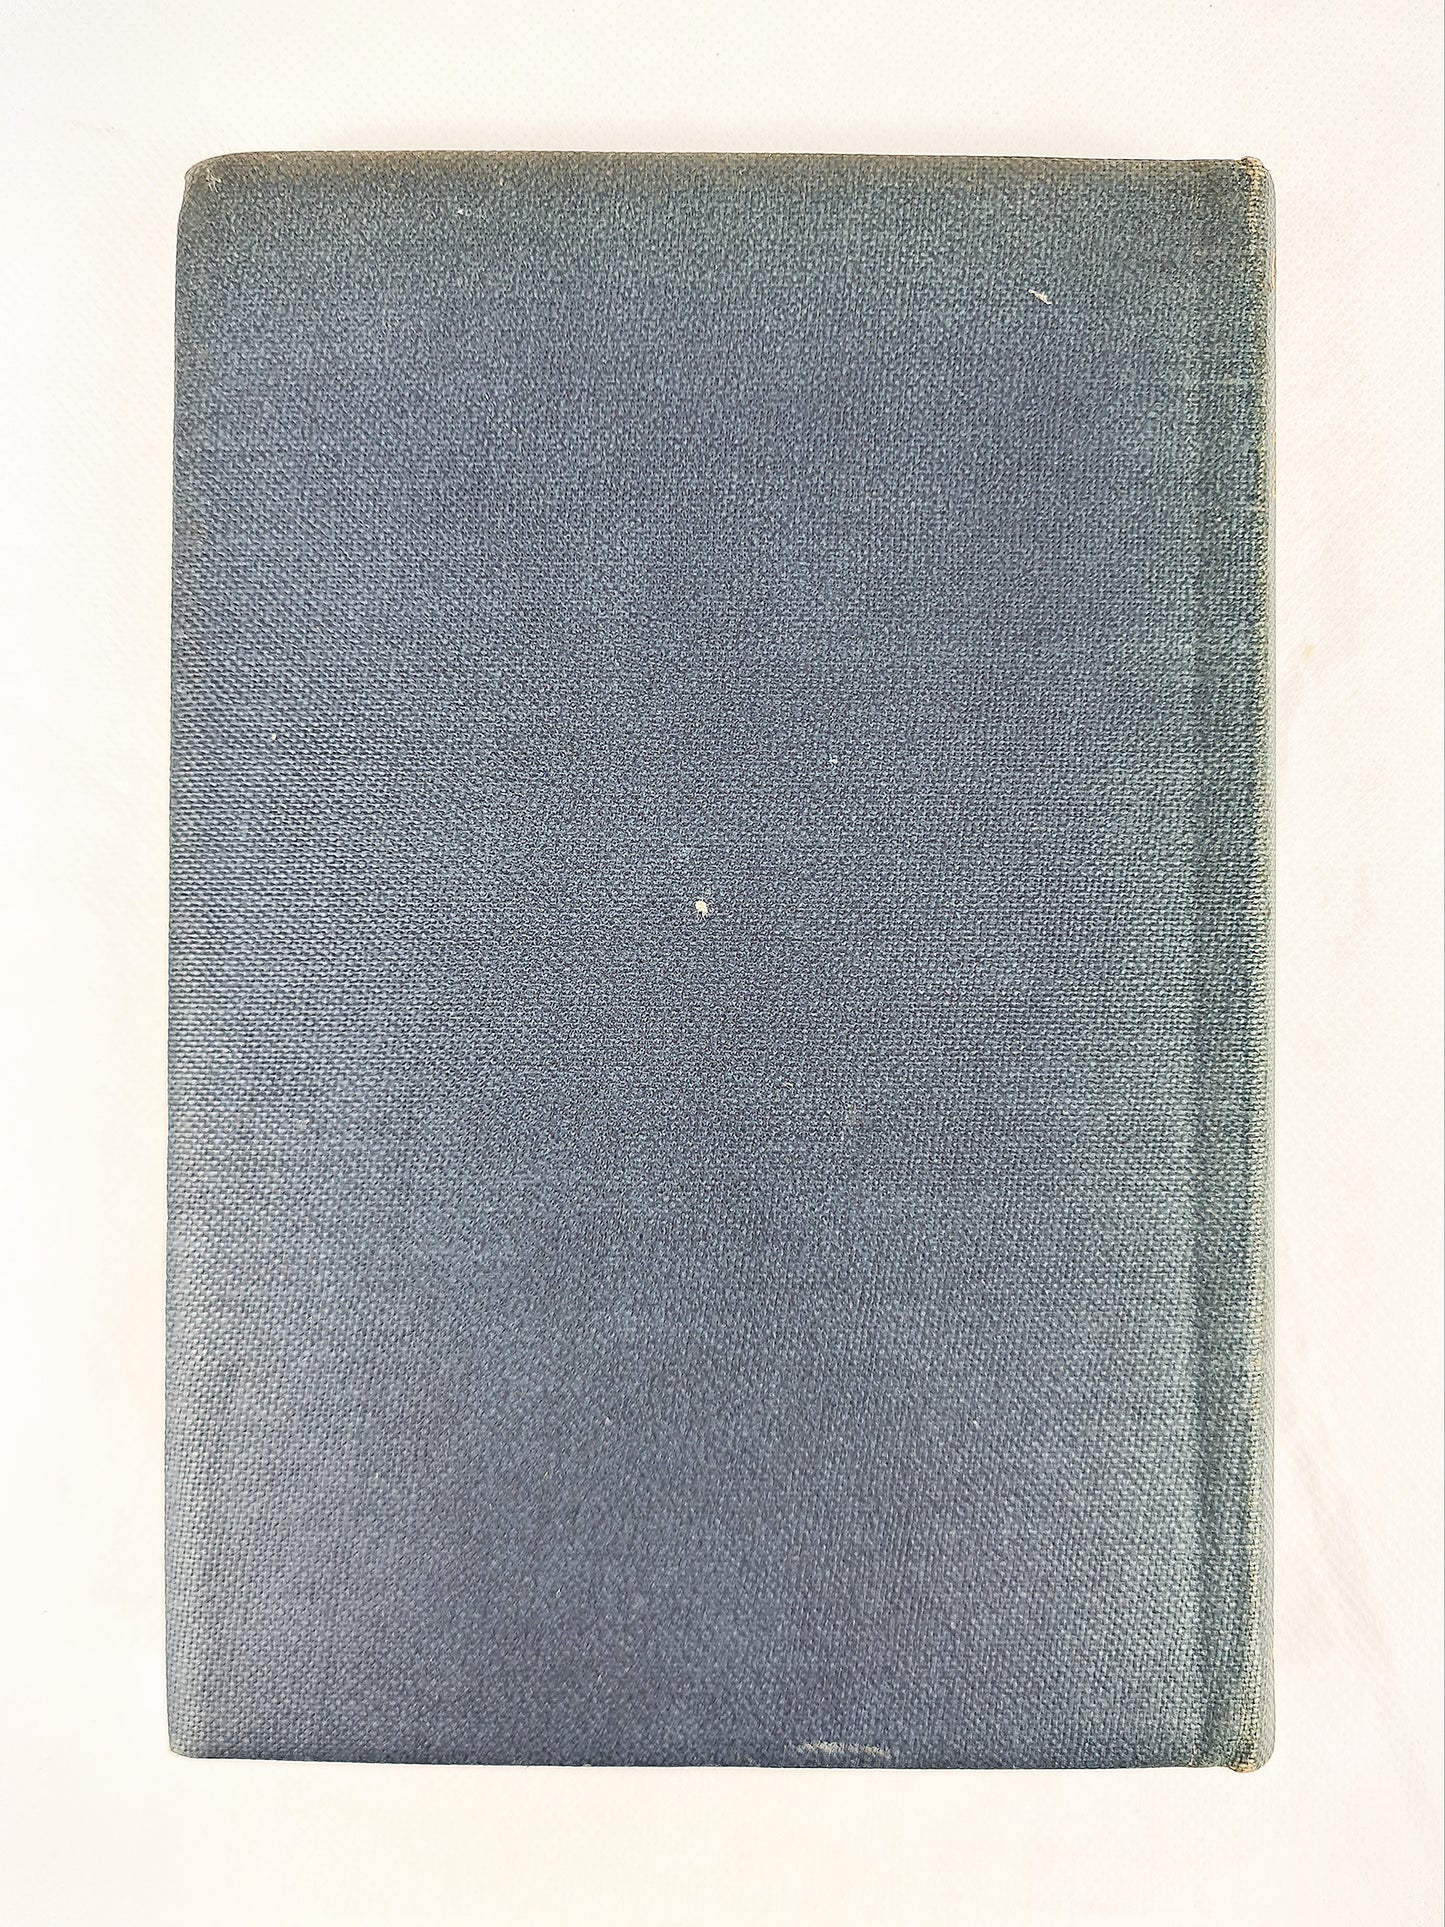 Complete Poems Of Rupert Brooke